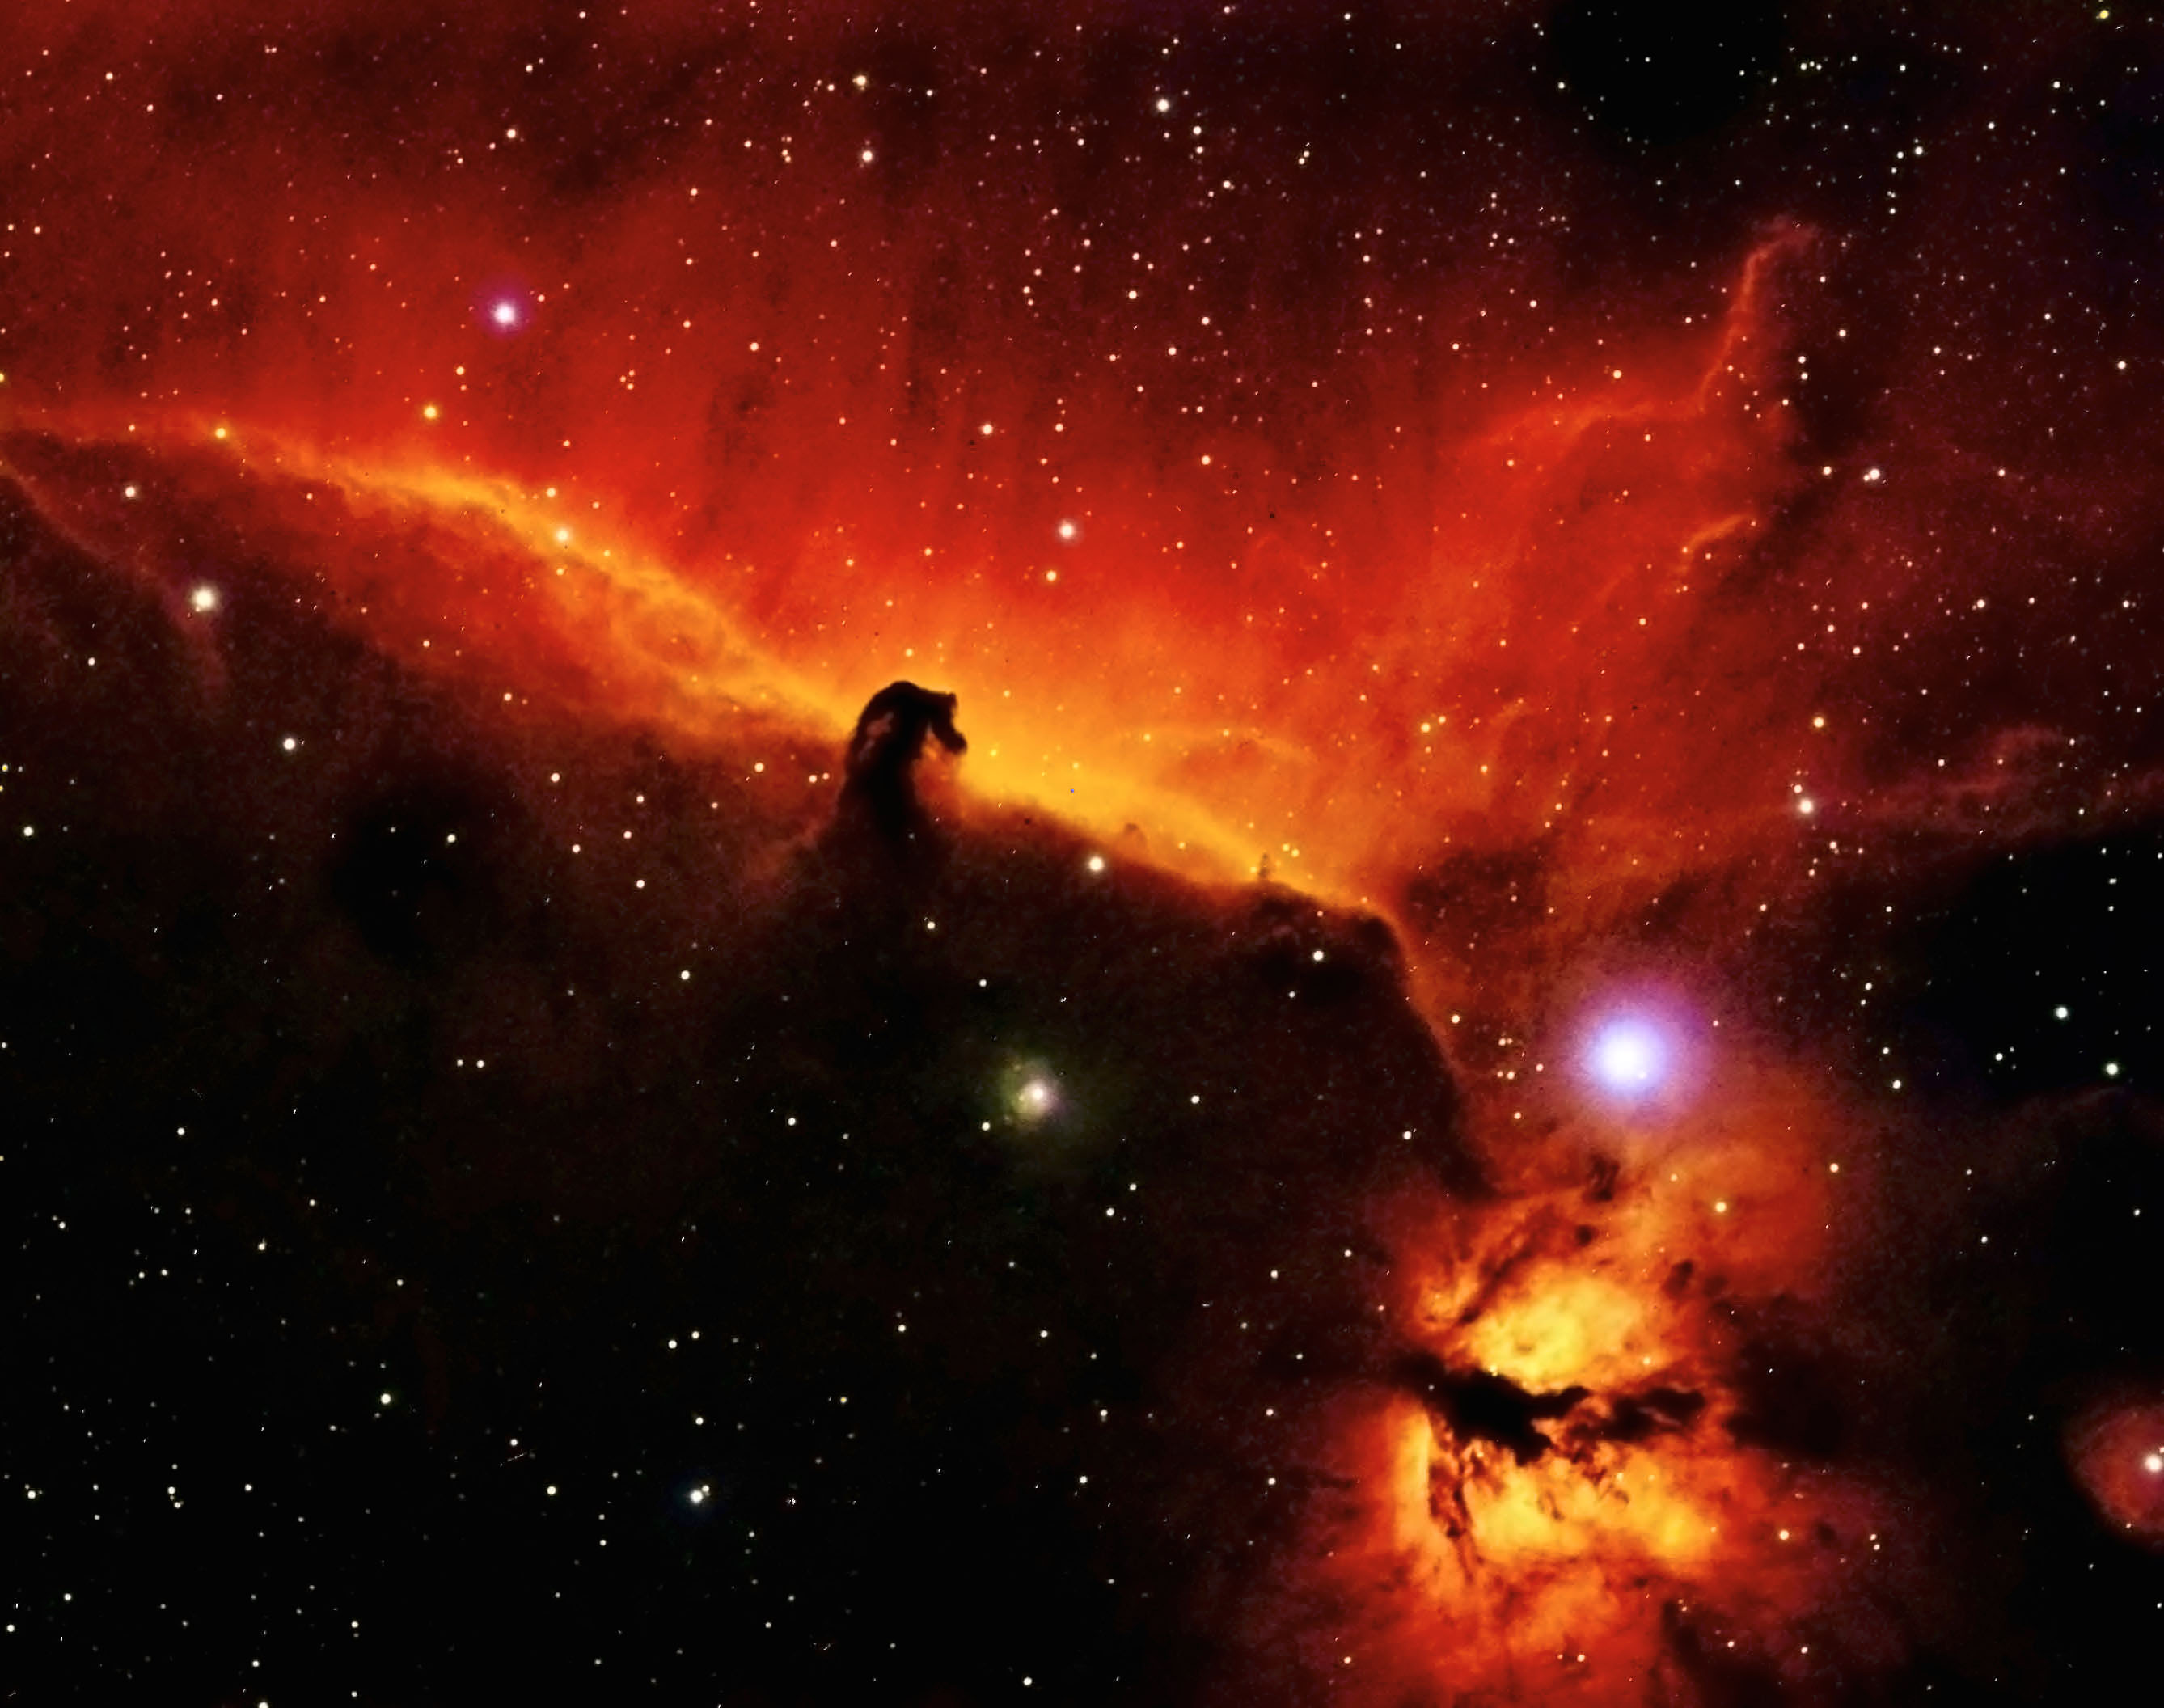 4th = Ray Palmer - Horsehead Nebula